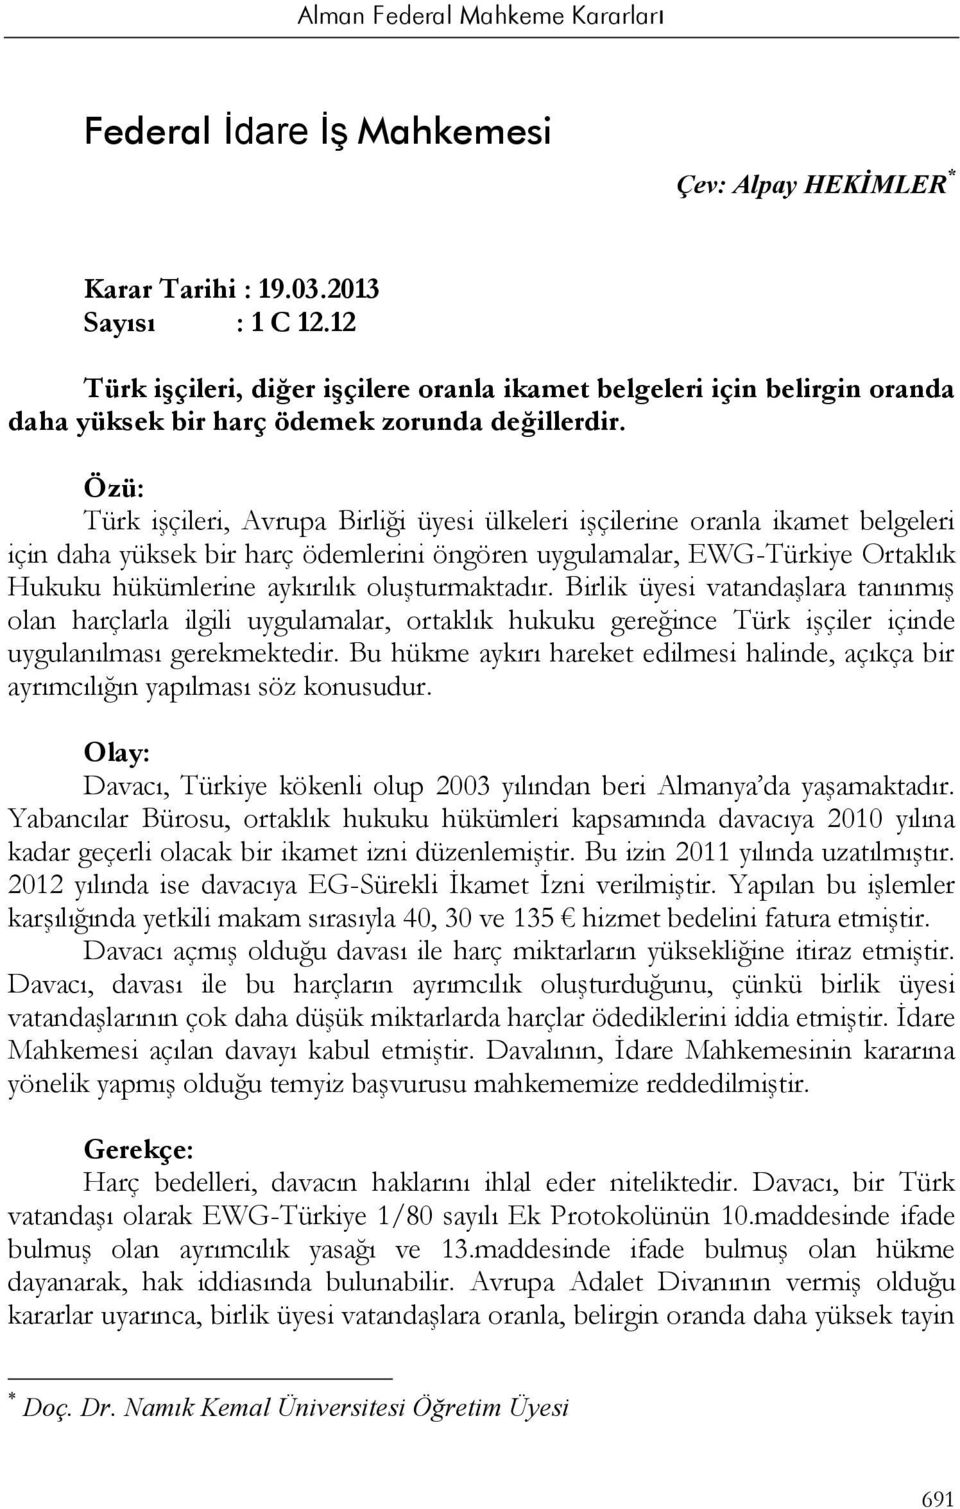 Özü: Türk işçileri, Avrupa Birliği üyesi ülkeleri işçilerine oranla ikamet belgeleri için daha yüksek bir harç ödemlerini öngören uygulamalar, EWG-Türkiye Ortaklık Hukuku hükümlerine aykırılık